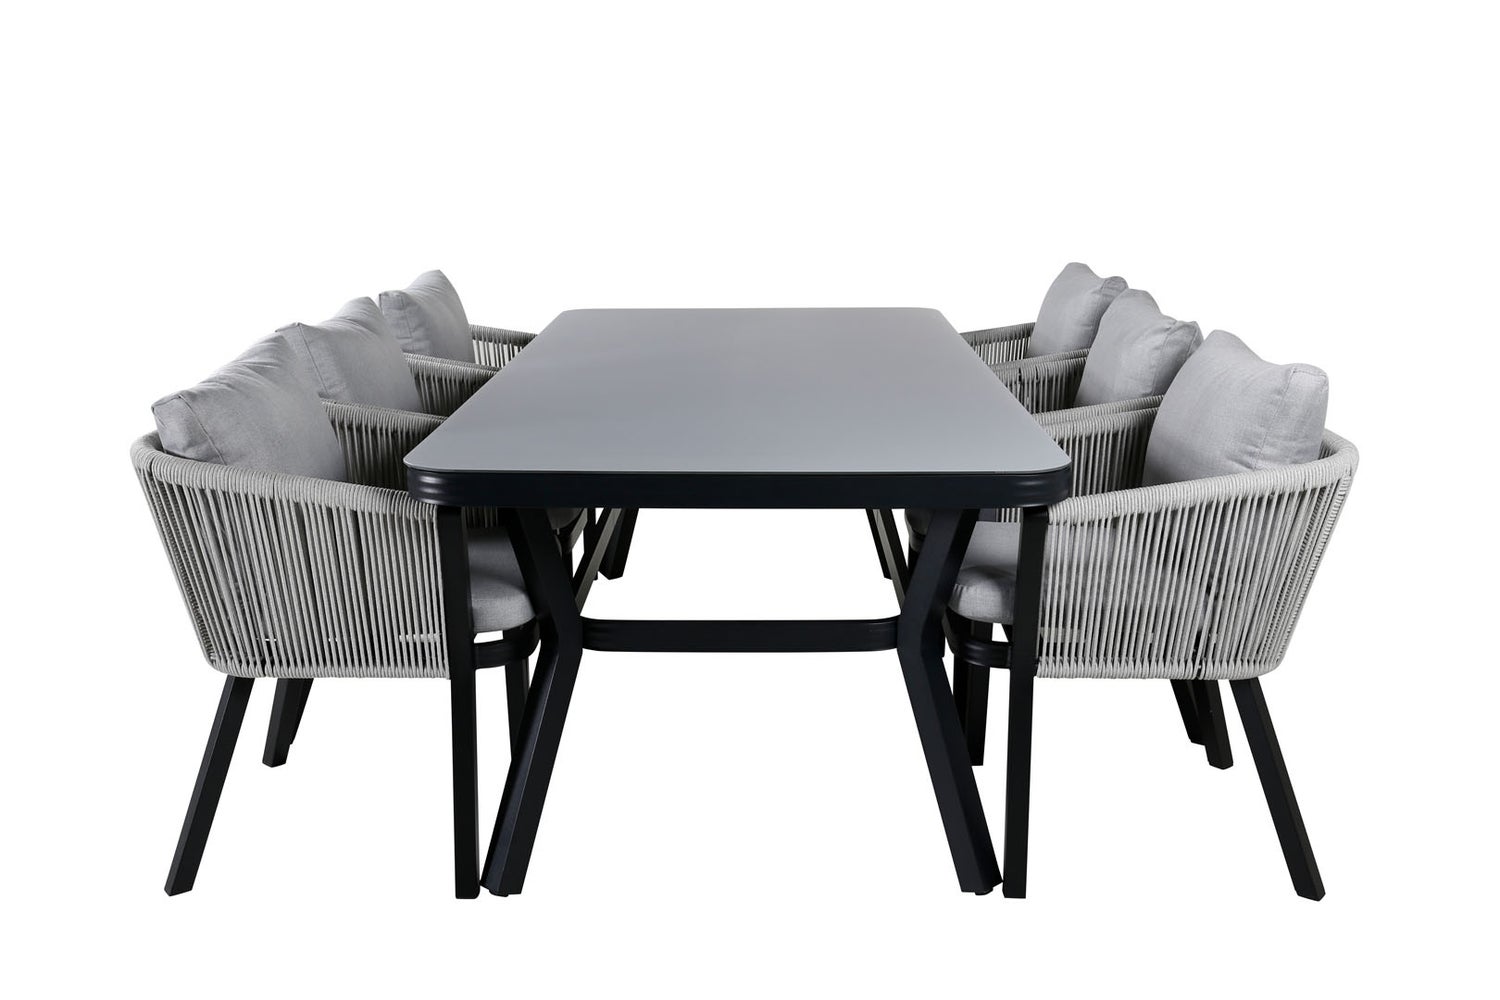 Virya Gartenset Tisch 100x200cm und 6 Stühle Virya weiß, schwarz, grau.